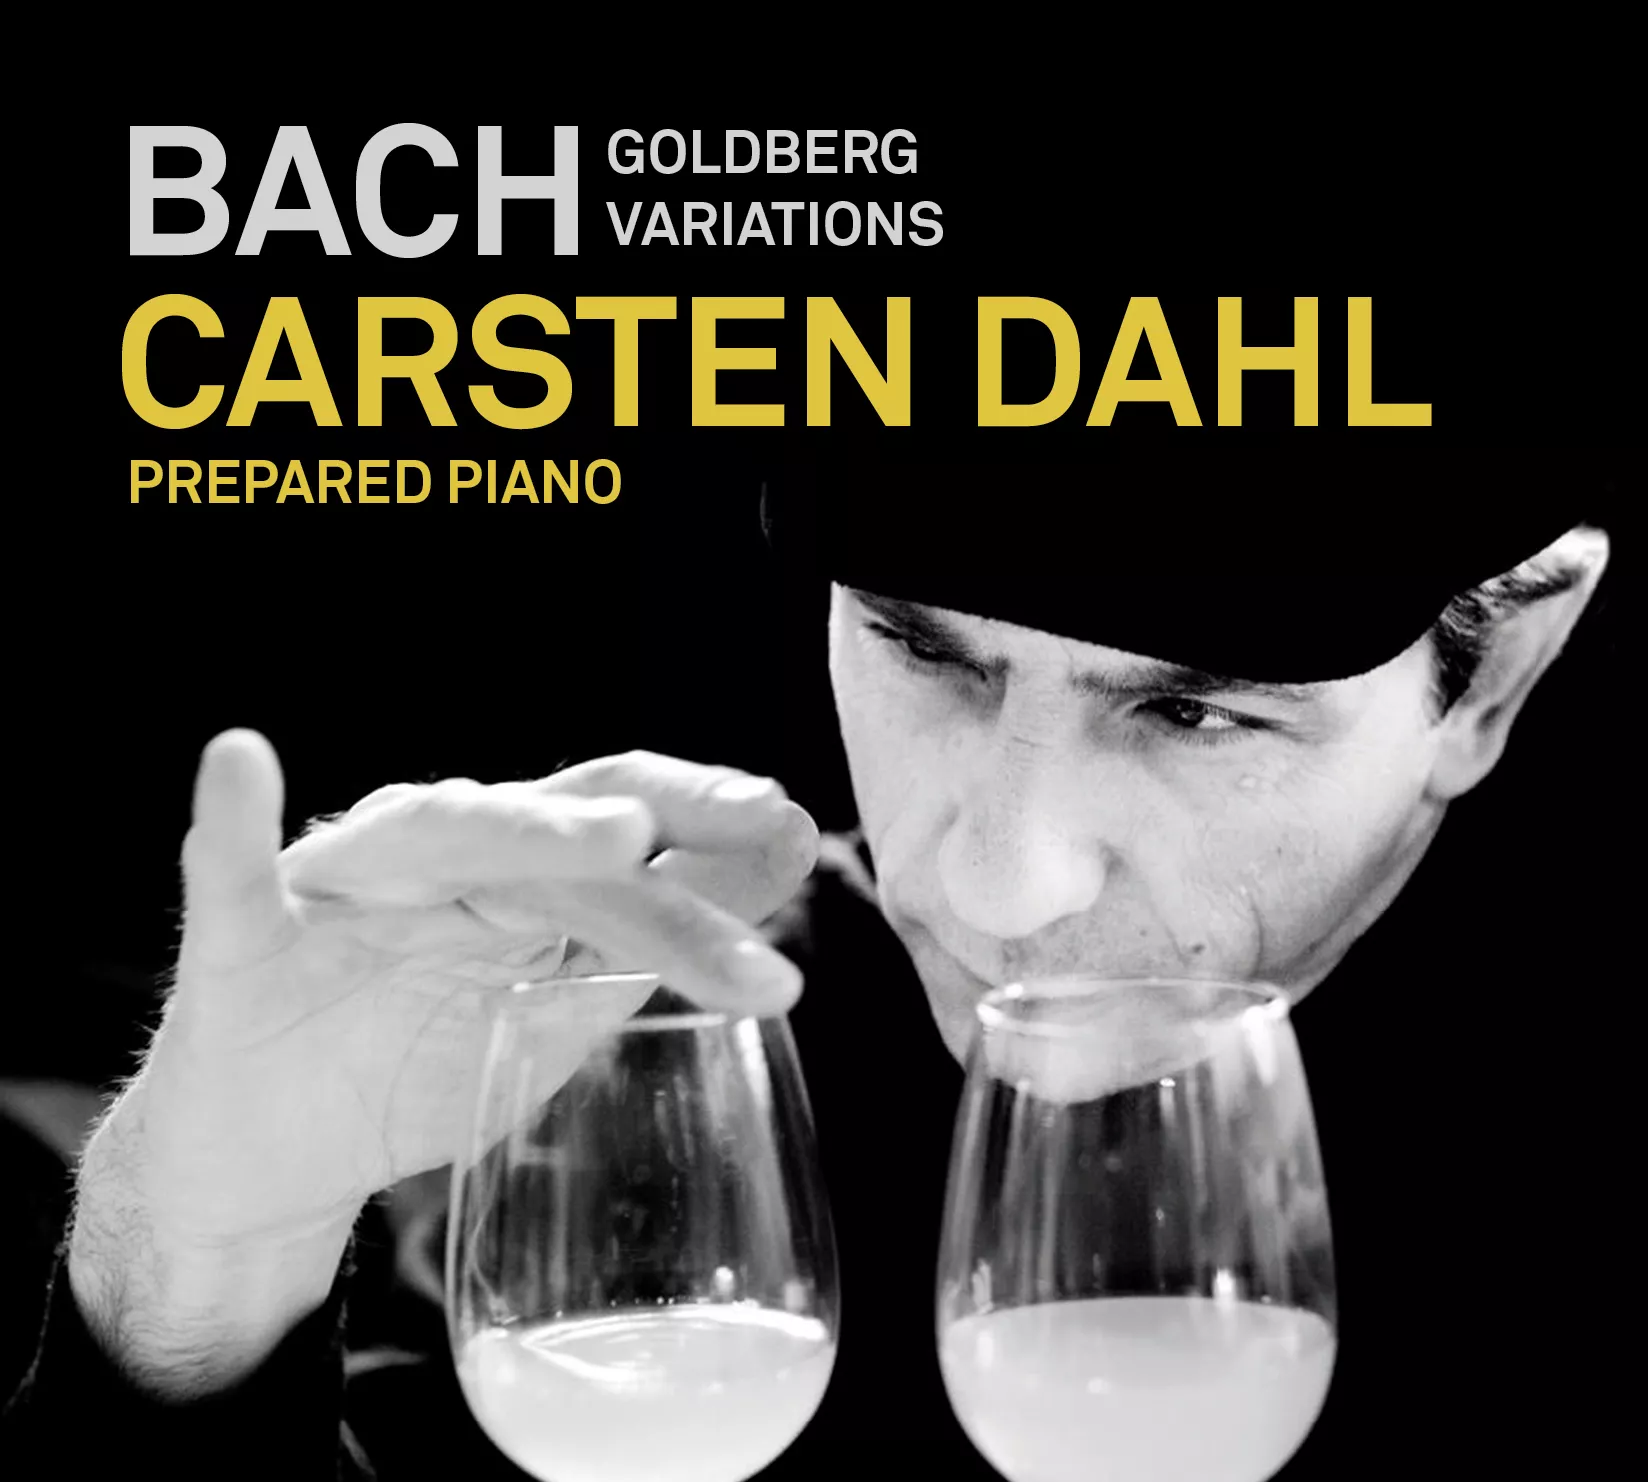 Bach Goldberg Variations - Carsten Dahl